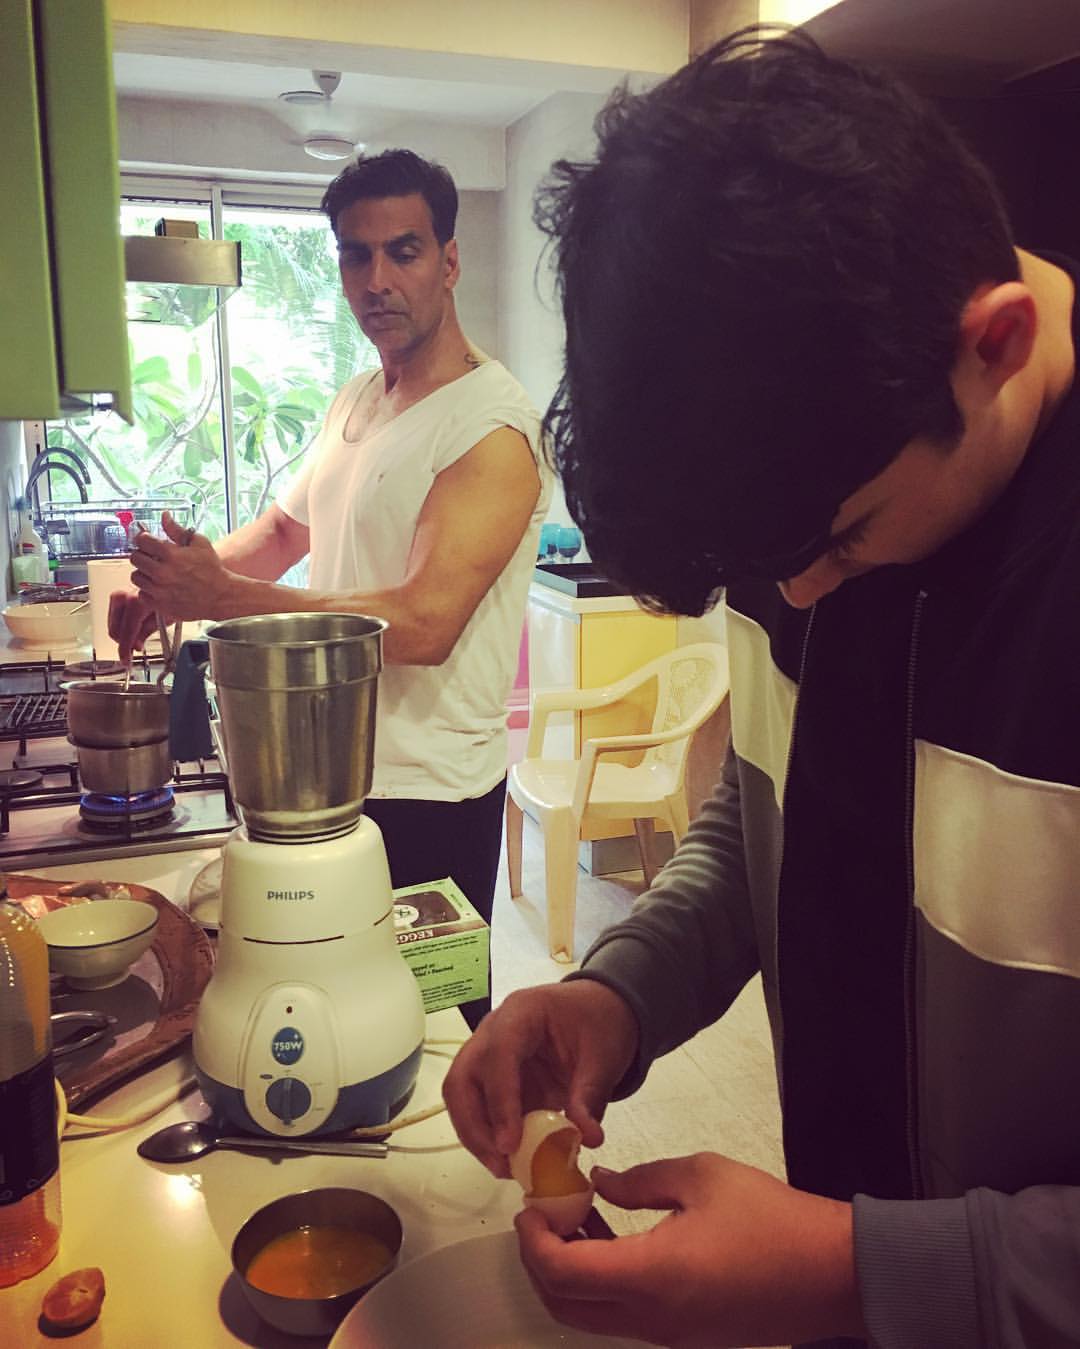 अक्षय कुमार स्वयंपाक घरामध्ये जेवण बनवताना दिसत आहे. (Photo courtesy: twinkle khanna instagram)